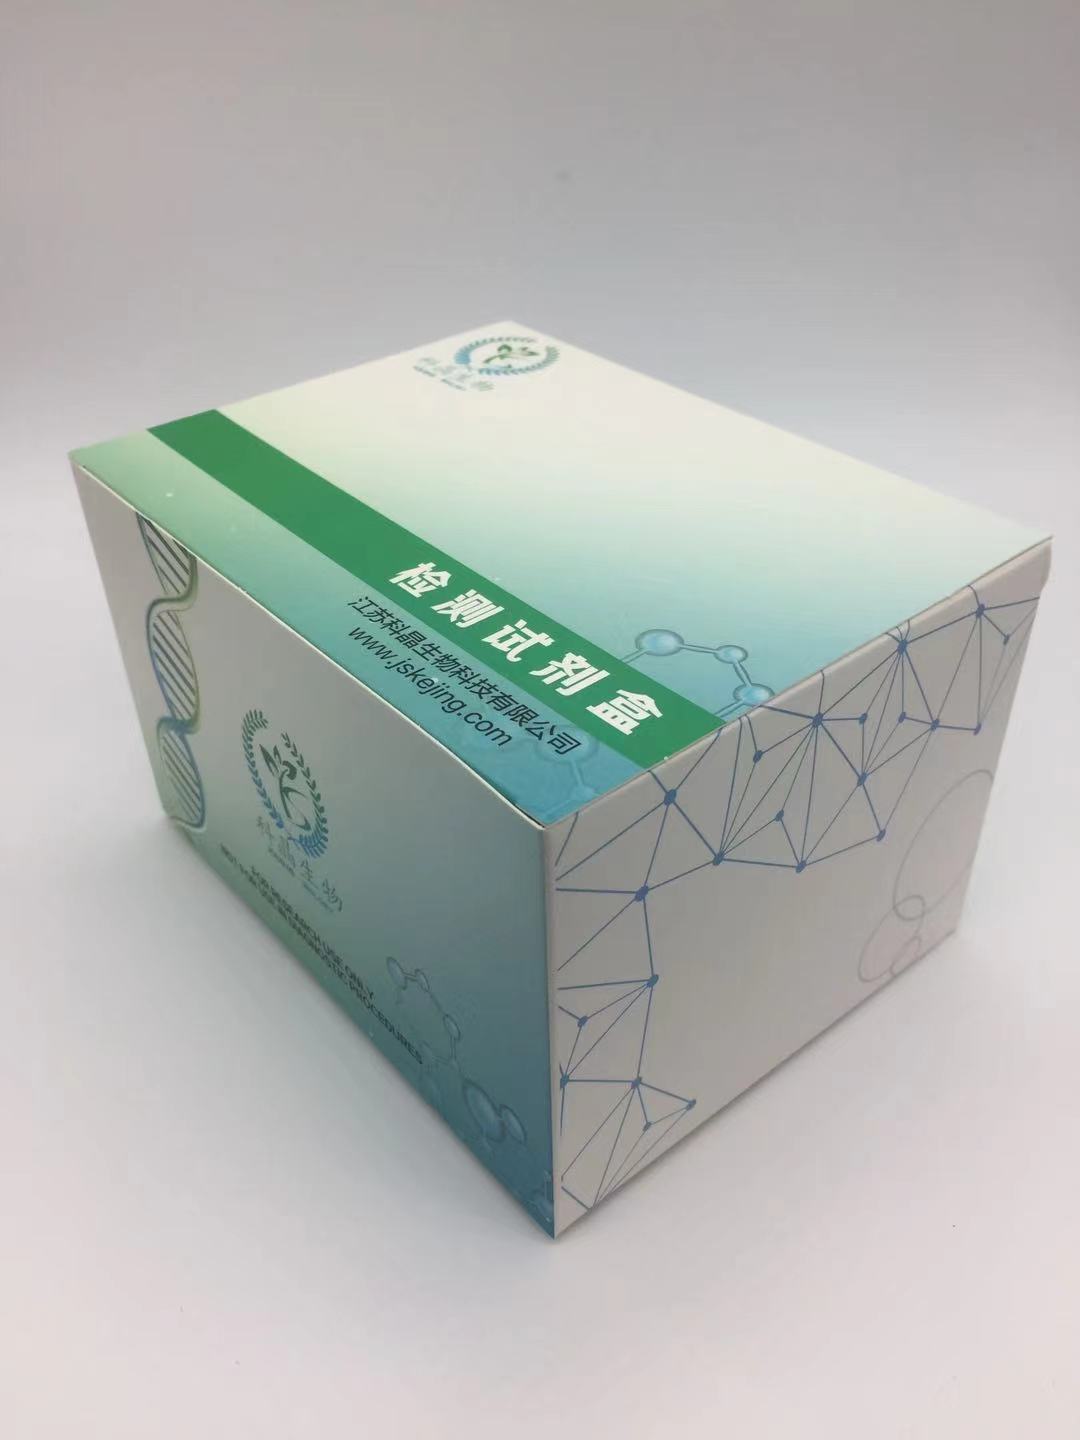 大鼠氧化低密度脂蛋白抗体(OLAb)ELISA试剂盒